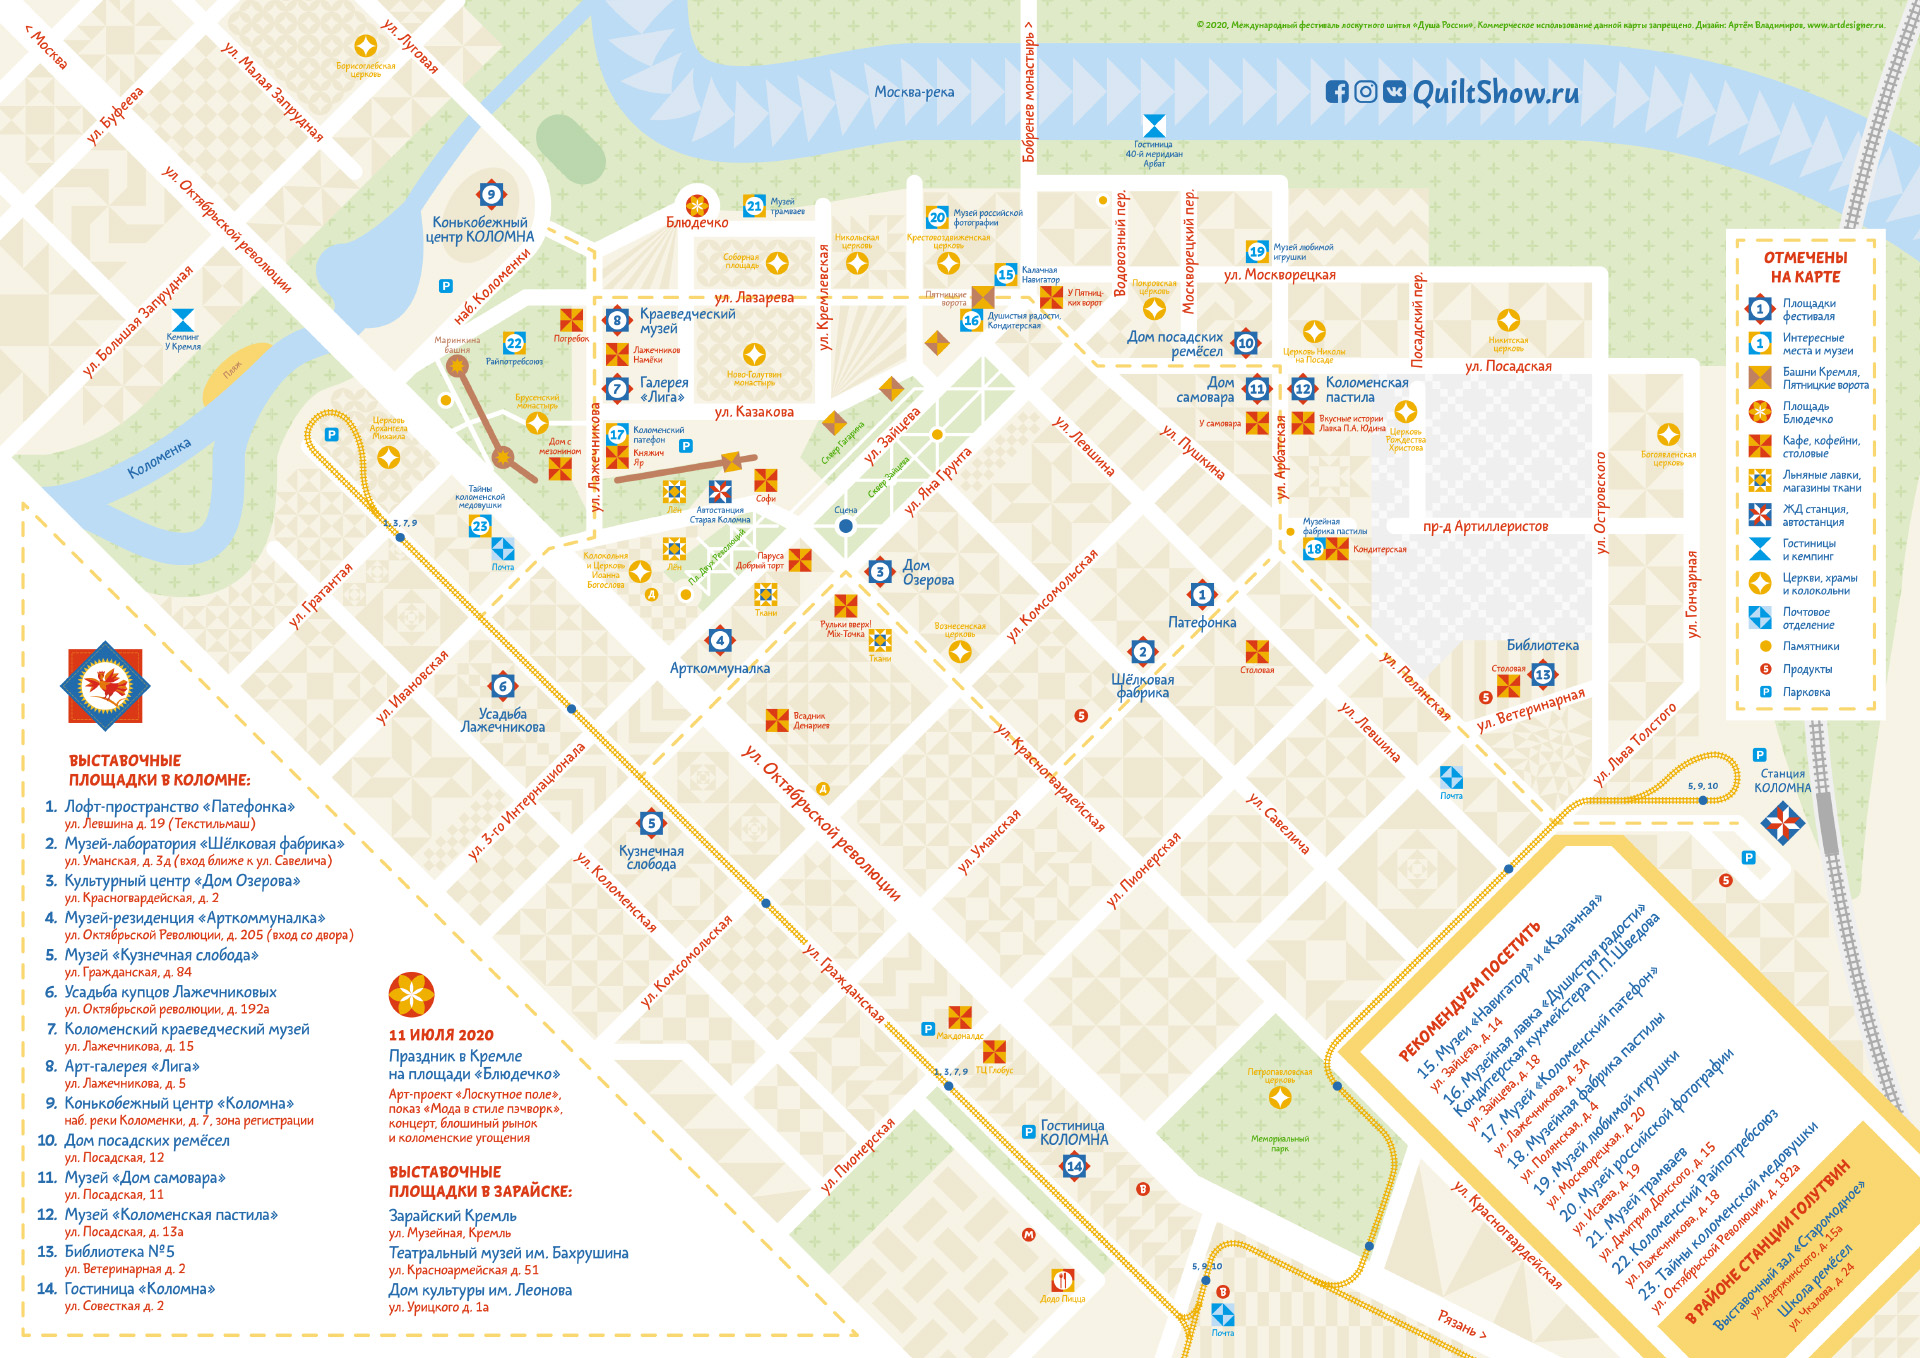 Лоскутная карта Коломны: как фестиваль «Душа России» украл мой дизайн